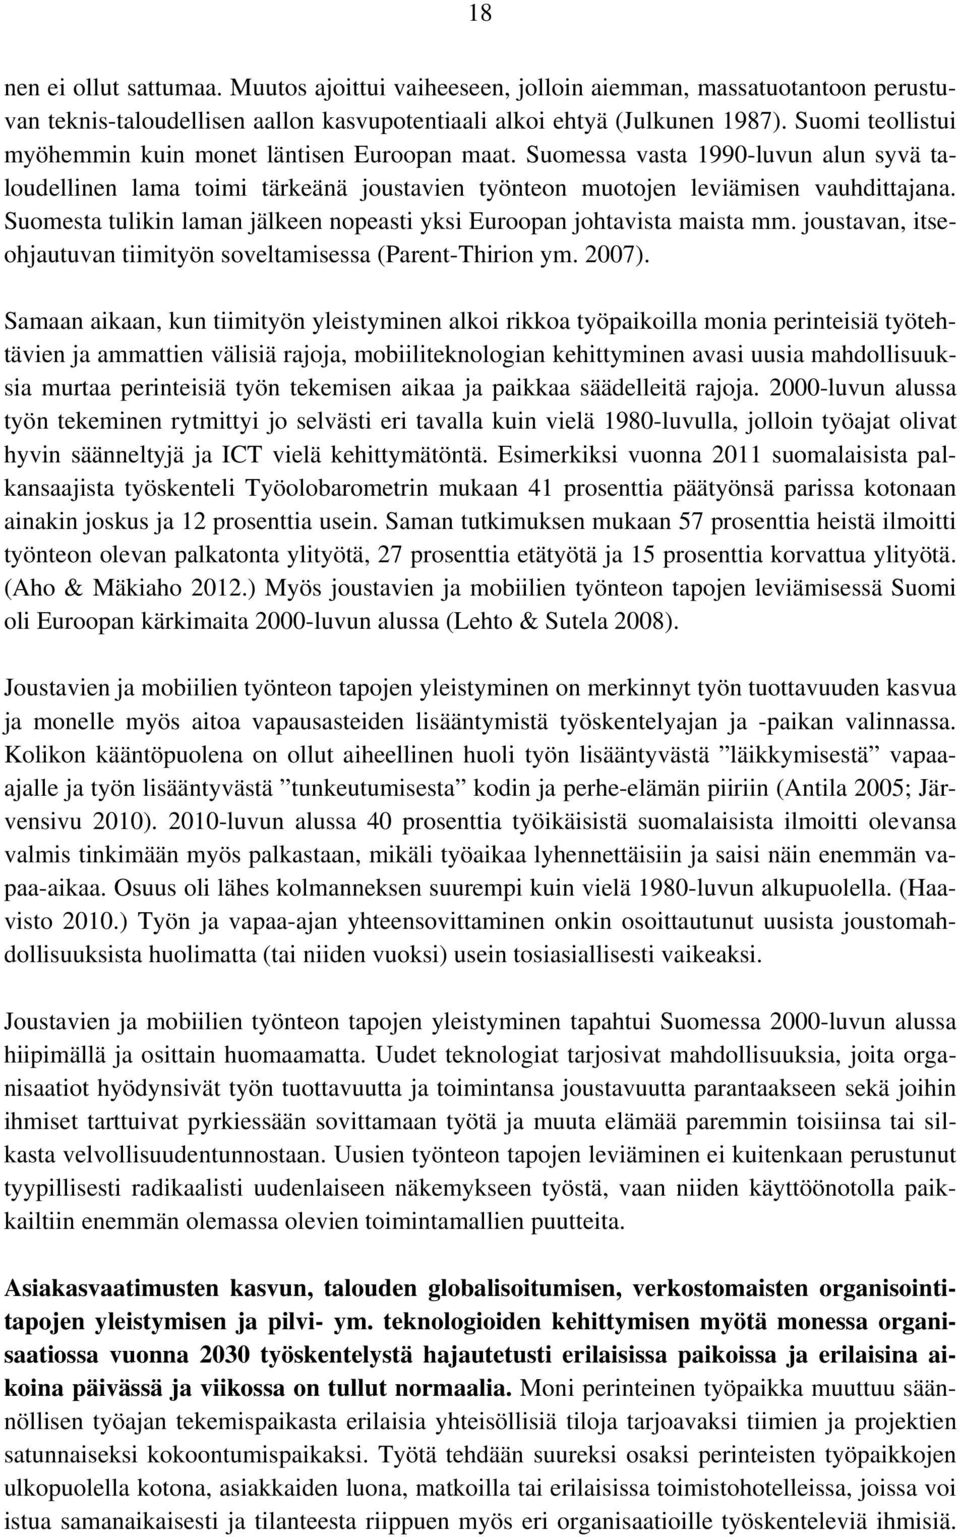 Suomesta tulikin laman jälkeen nopeasti yksi Euroopan johtavista maista mm. joustavan, itseohjautuvan tiimityön soveltamisessa (Parent-Thirion ym. 2007).